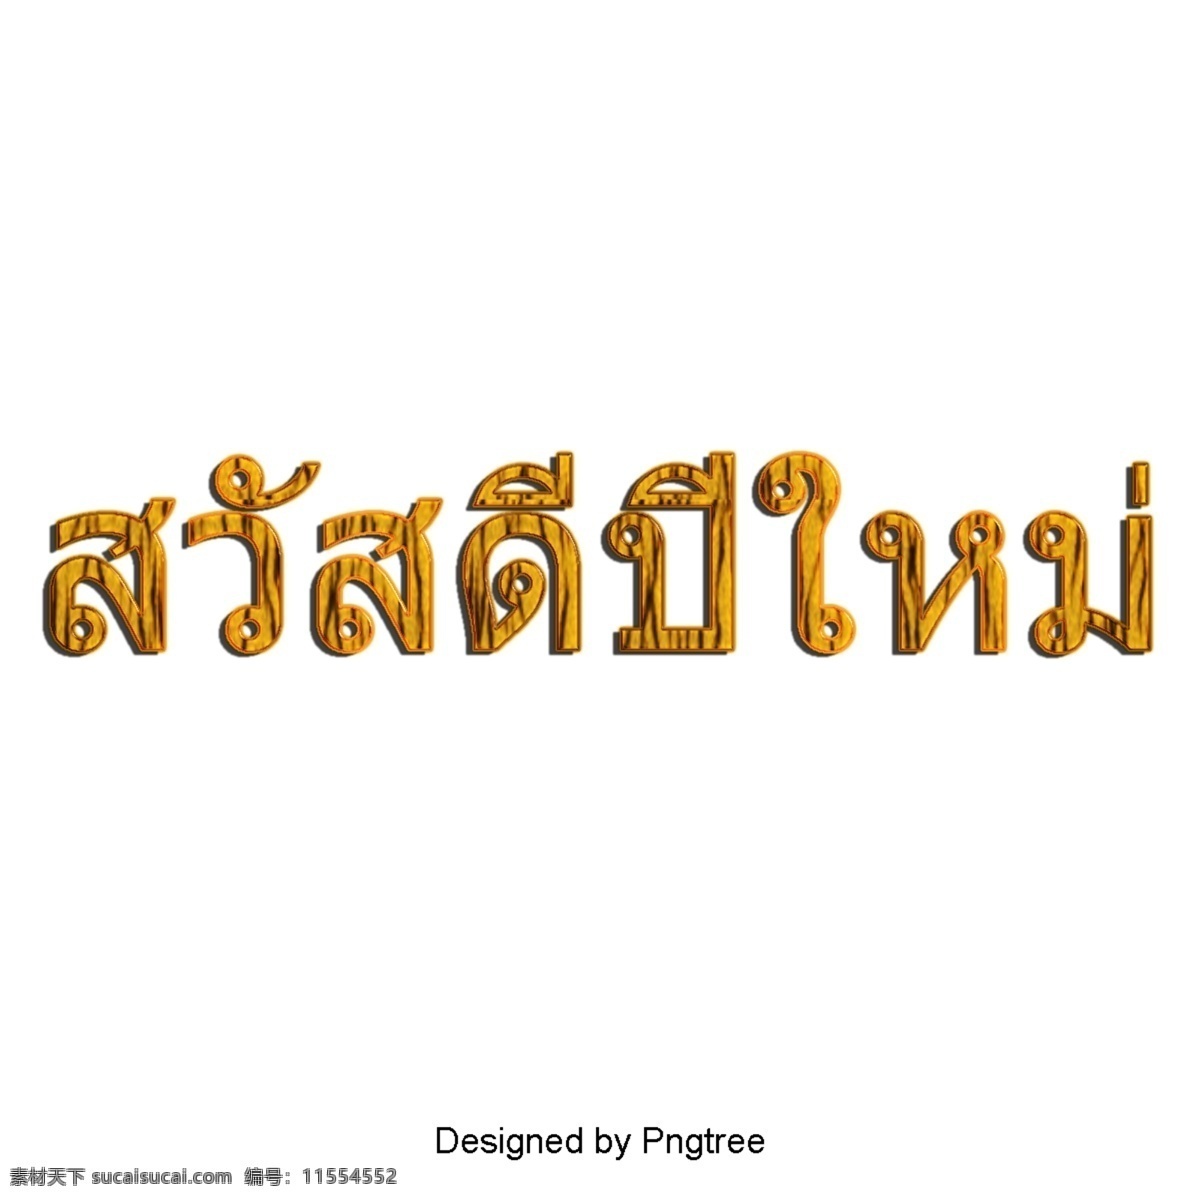 泰国人物艺术 泰国风格 文本 新年快乐 文字艺术 插图